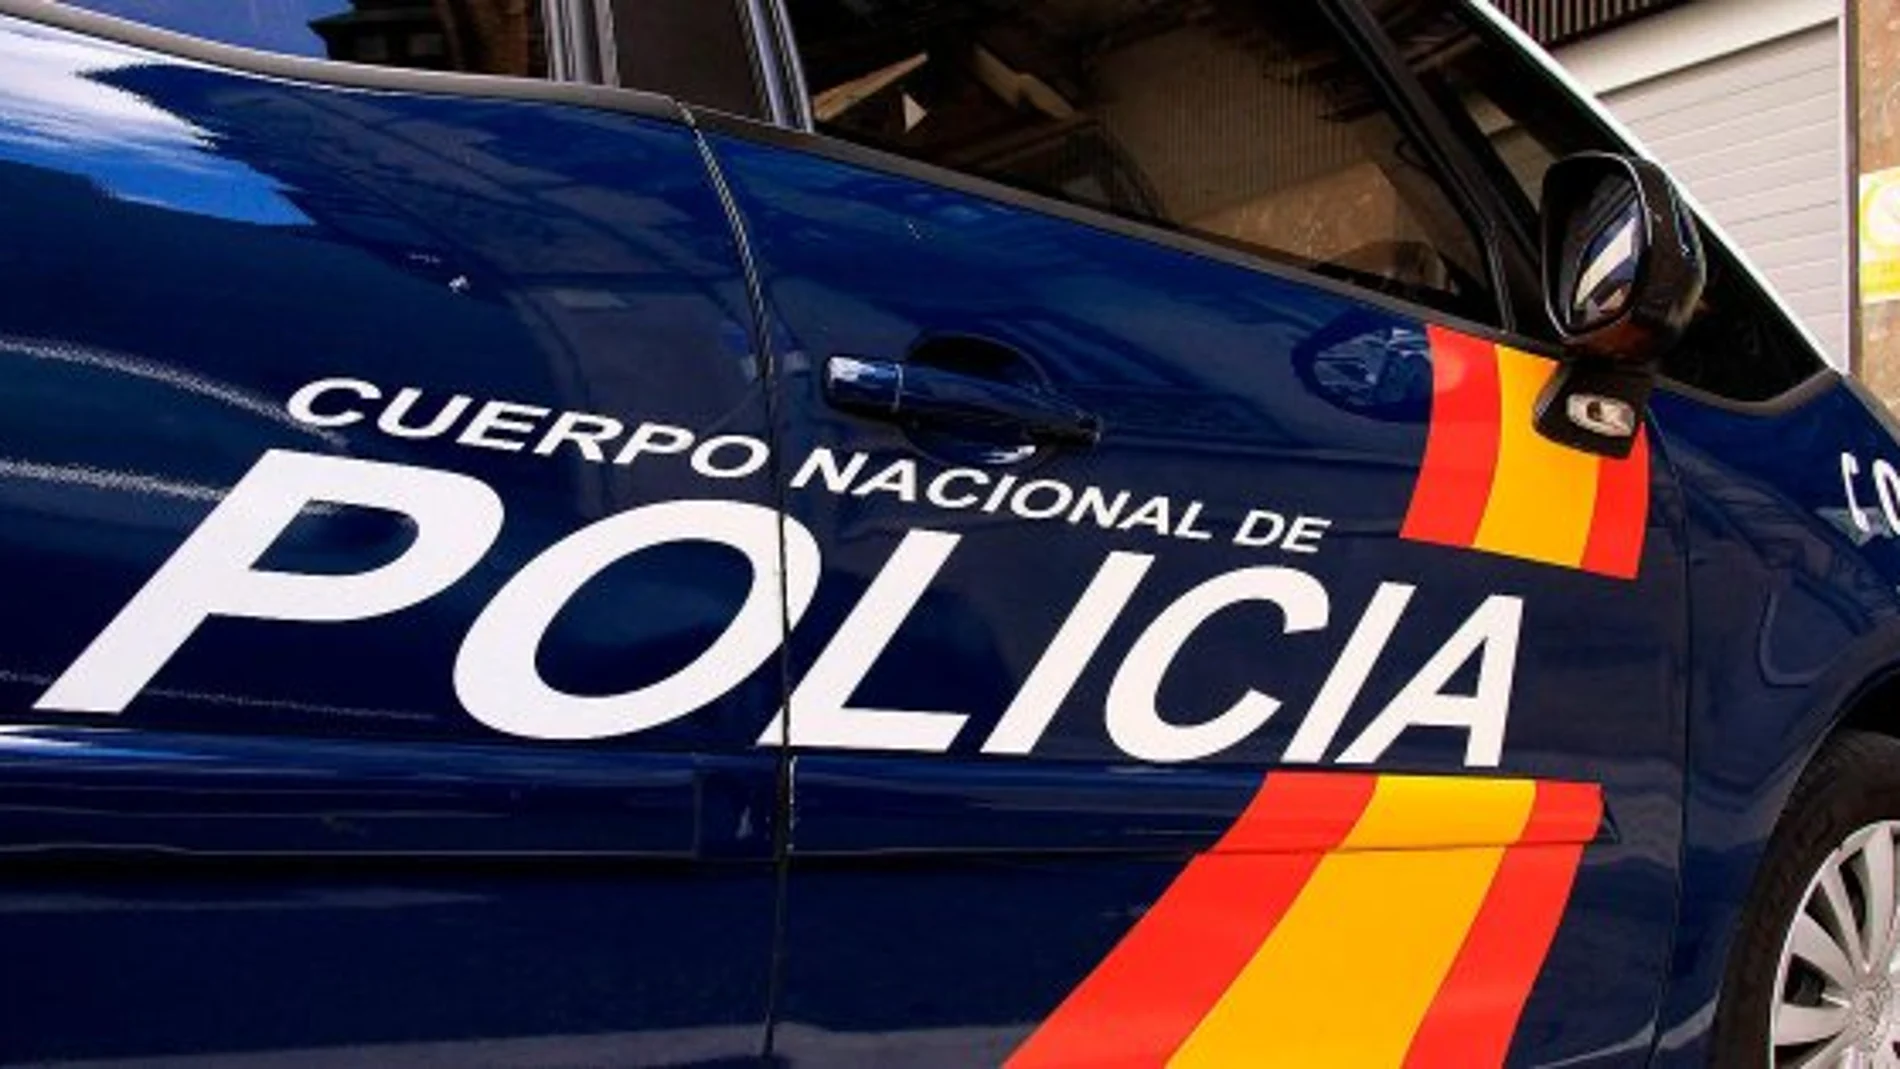 La Policía Nacional investiga las causas del apuñalamiento y ha descartado que esté relacionado con las bandas latinas